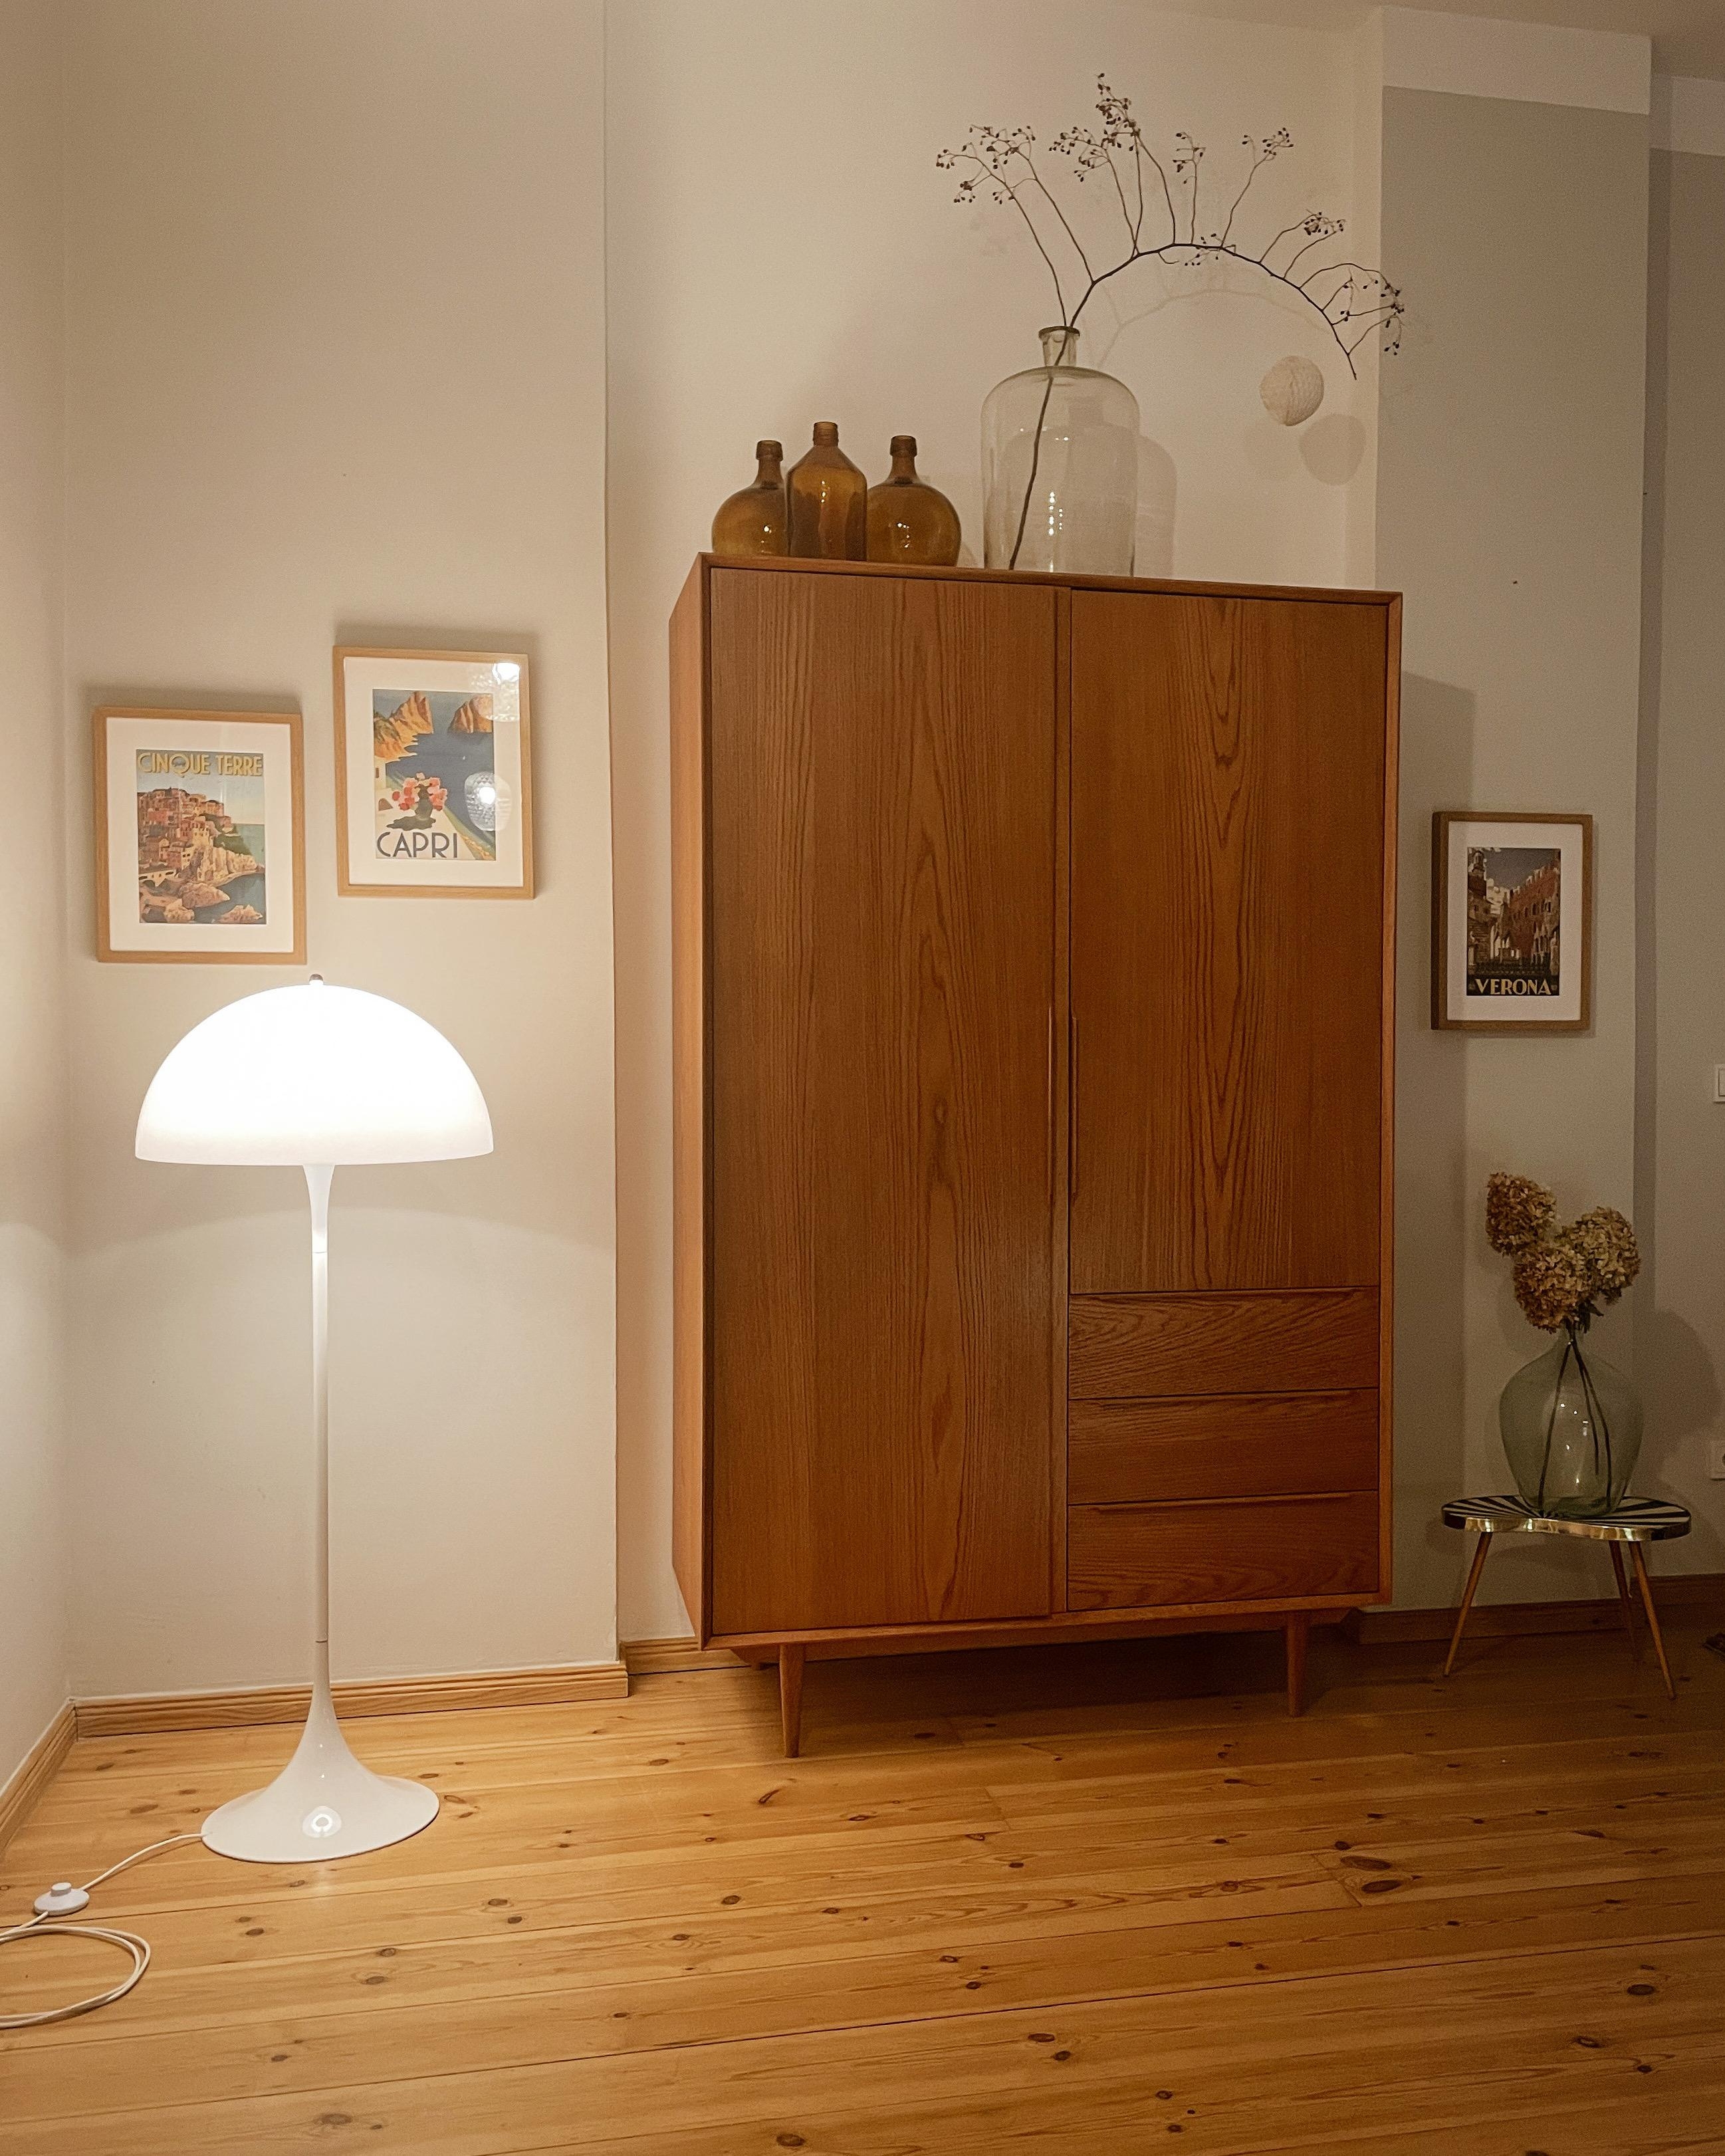  🤎💡Herzlich willkommen!


#flur #lampe #vintage #hallway #stehlampe #vintageliebe #skandinaviandesign